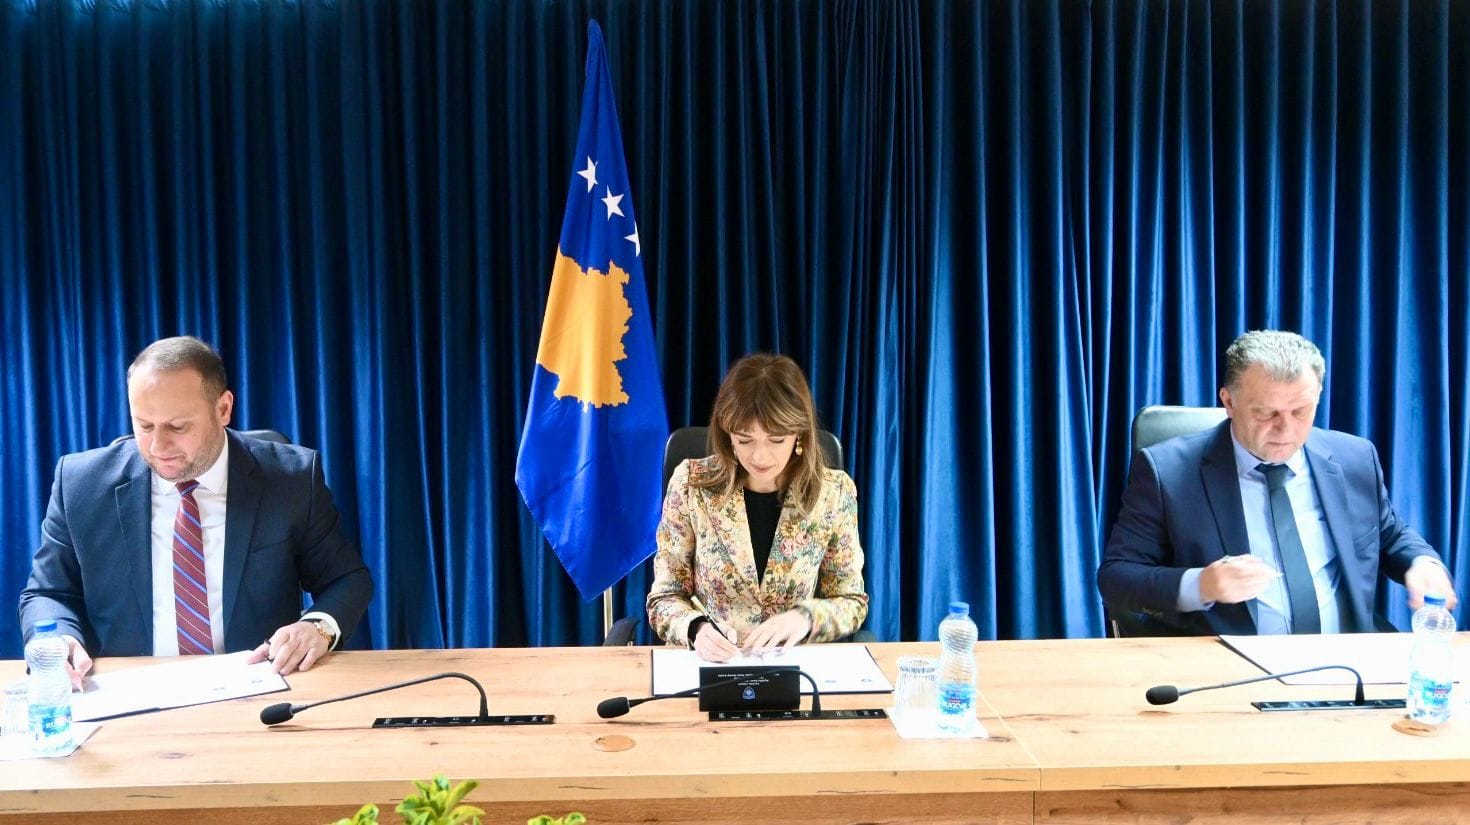 Nënshkruhet Marrëveshje Bashkëpunimi në mes të Këshillit Gjyqësor të Kosovës, Ministrisë së Drejtësisë dhe Odës së Noterëve të Kosovës për zgjidhjen e çështjes së ruajtjes së lëndëve të noterëve të pensionuar